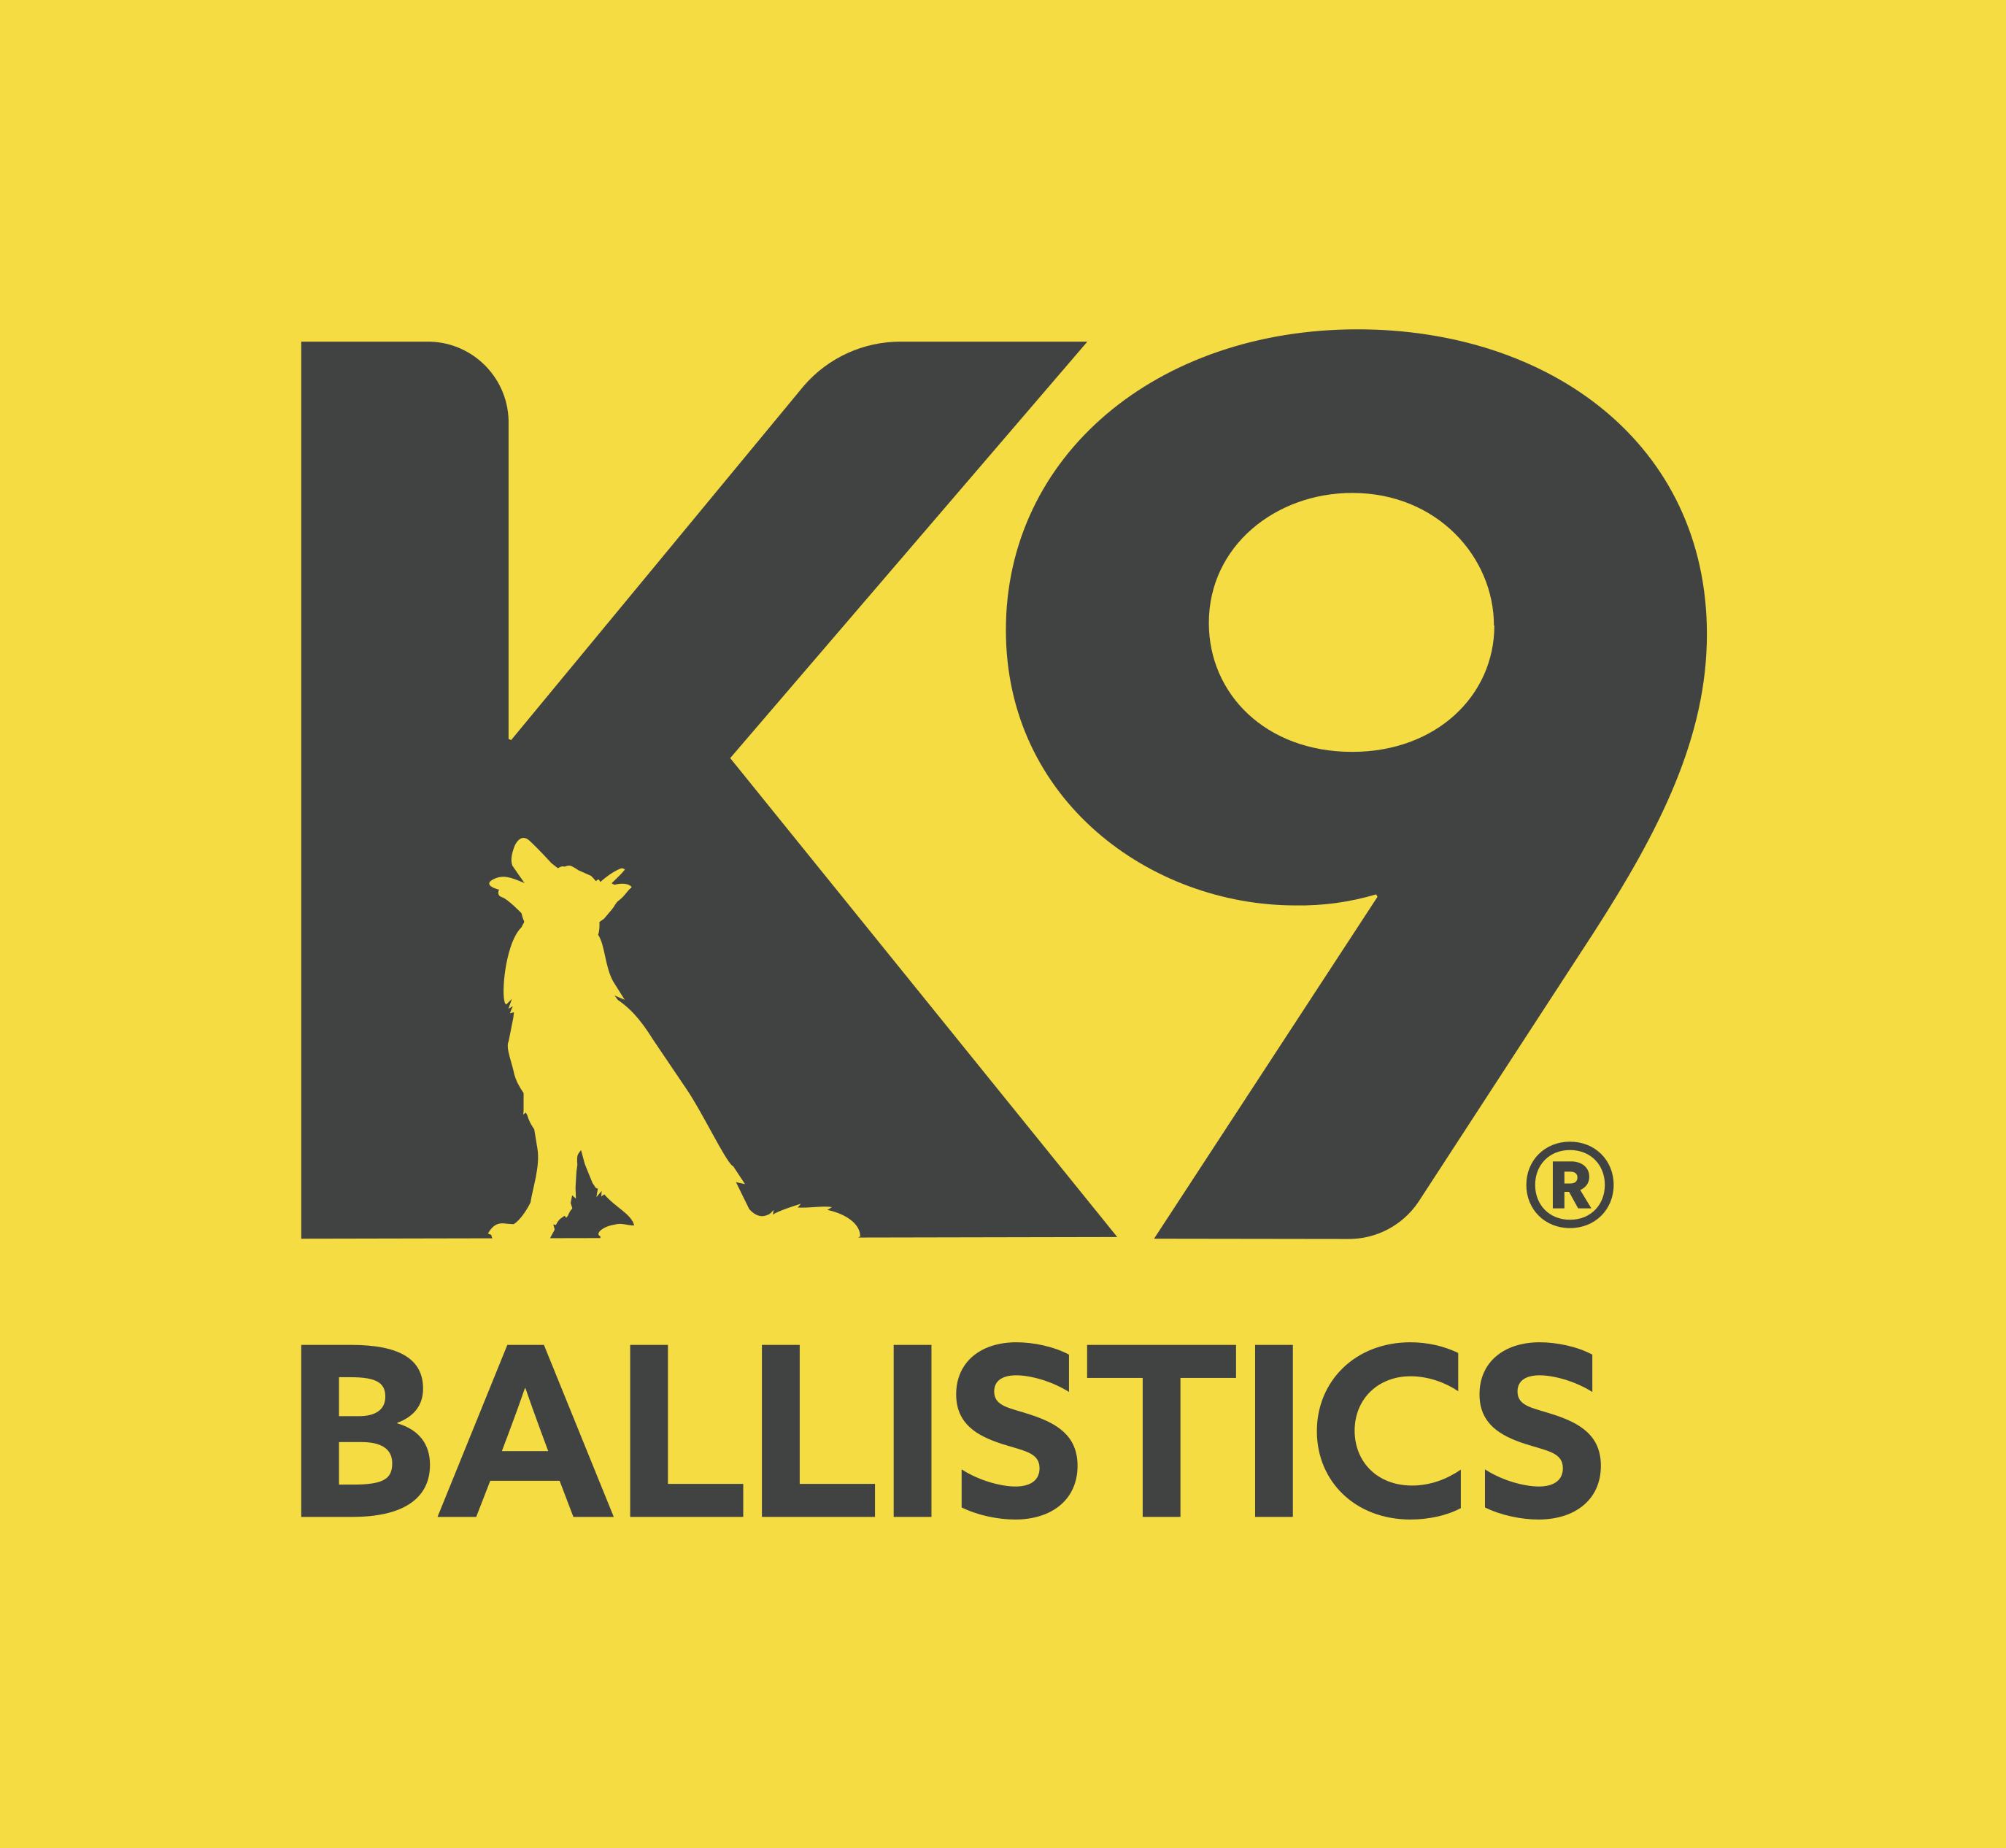 K9 Ballistics logo